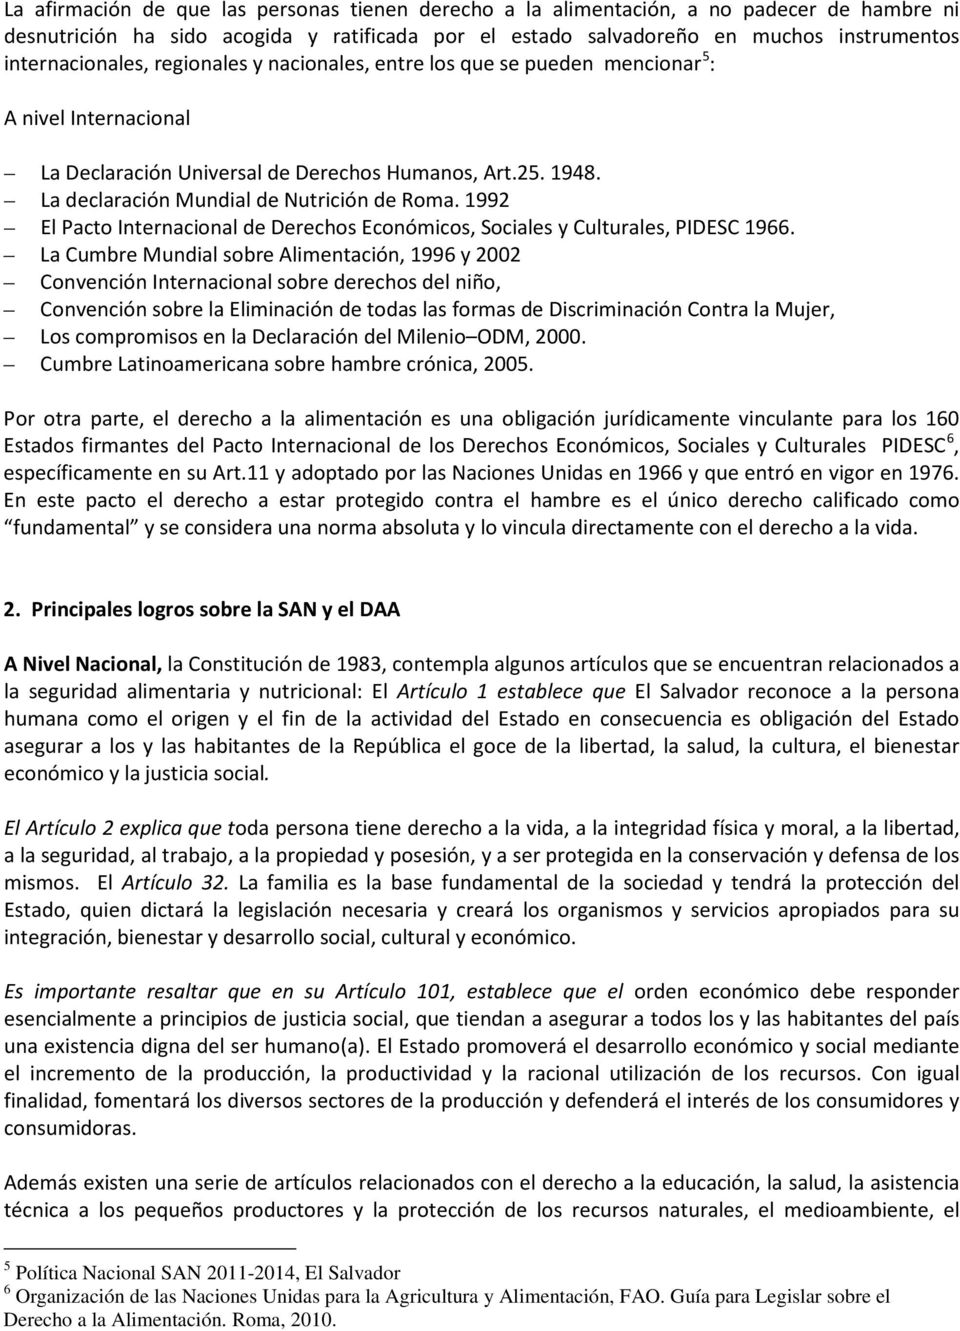 1992 El Paco Inernacional de Derechos Económicos, Sociales y Culurales, PIDESC 1966.